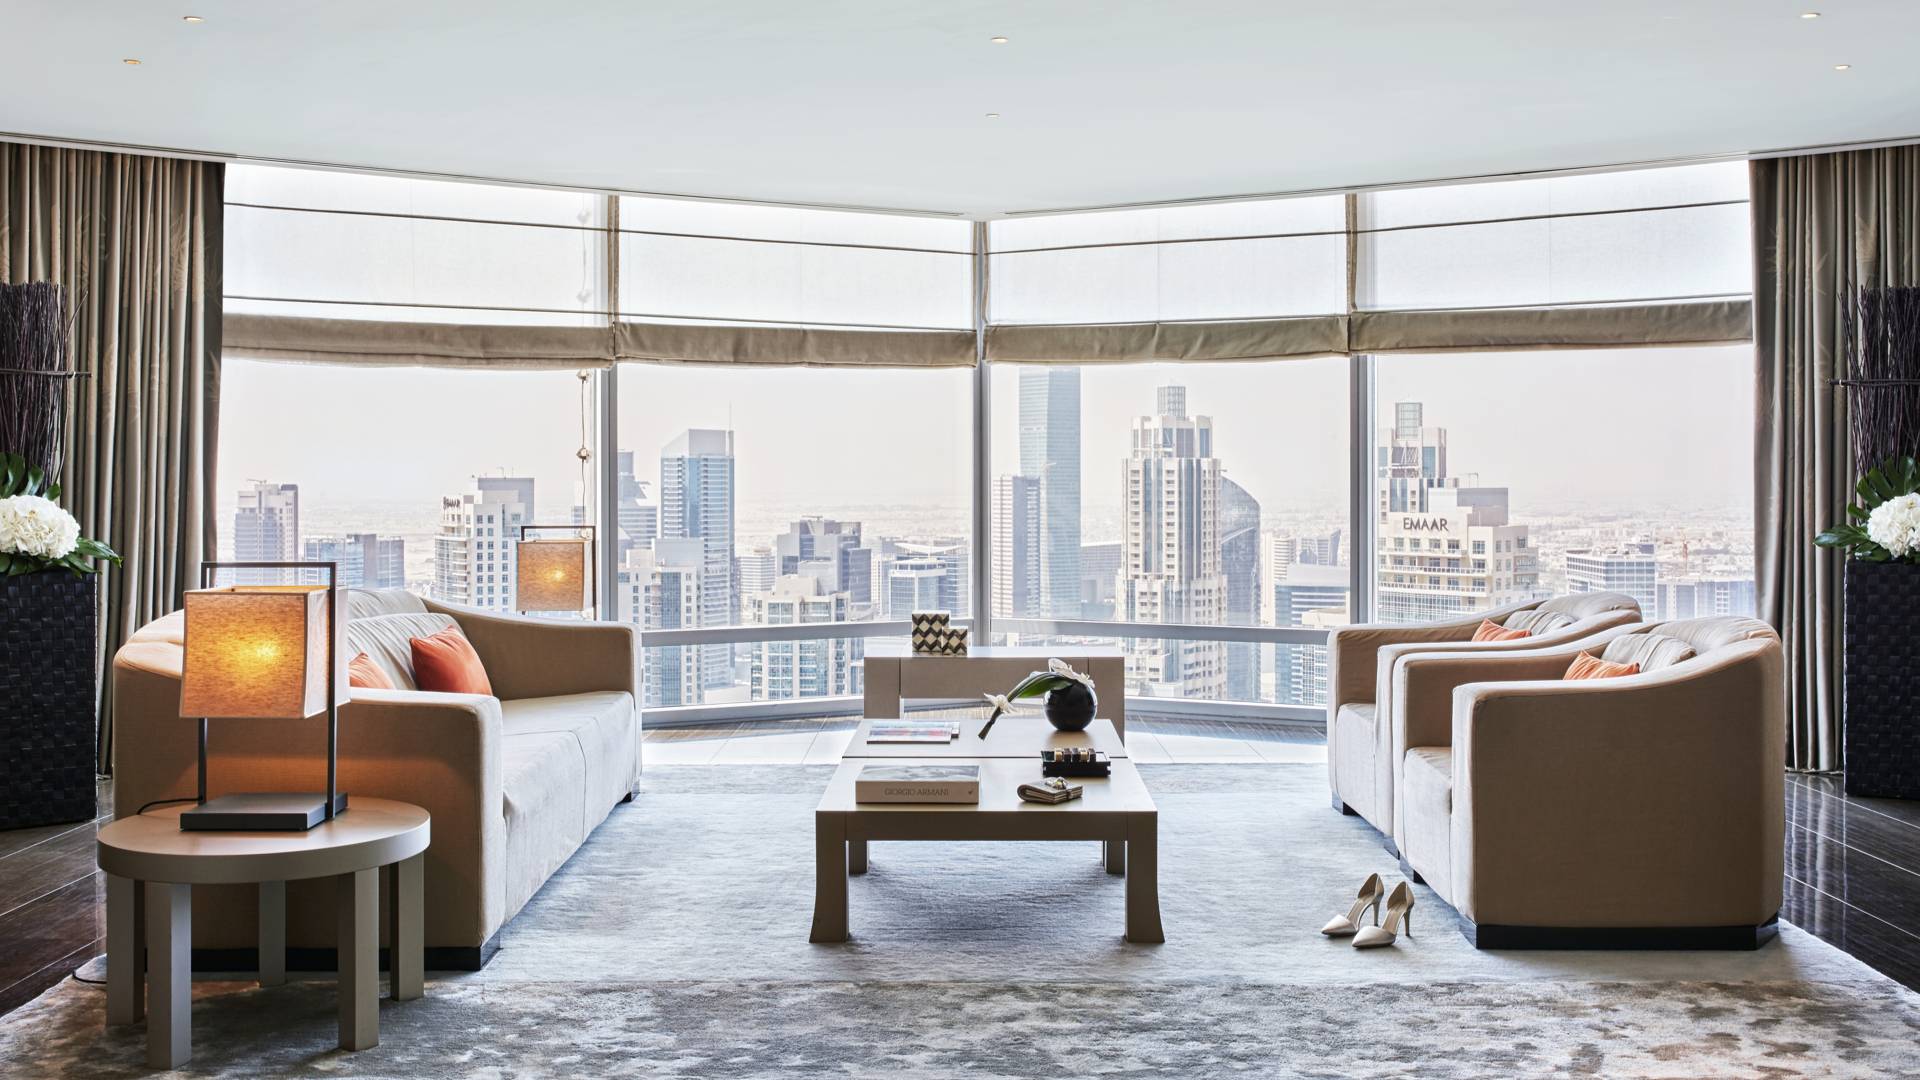 Les suites Armani Signature, situées aux 38ème et 39ème étages, présentent un design chic et offrent une vue imprenable sur la ville / © Armani Hotel Dubai)